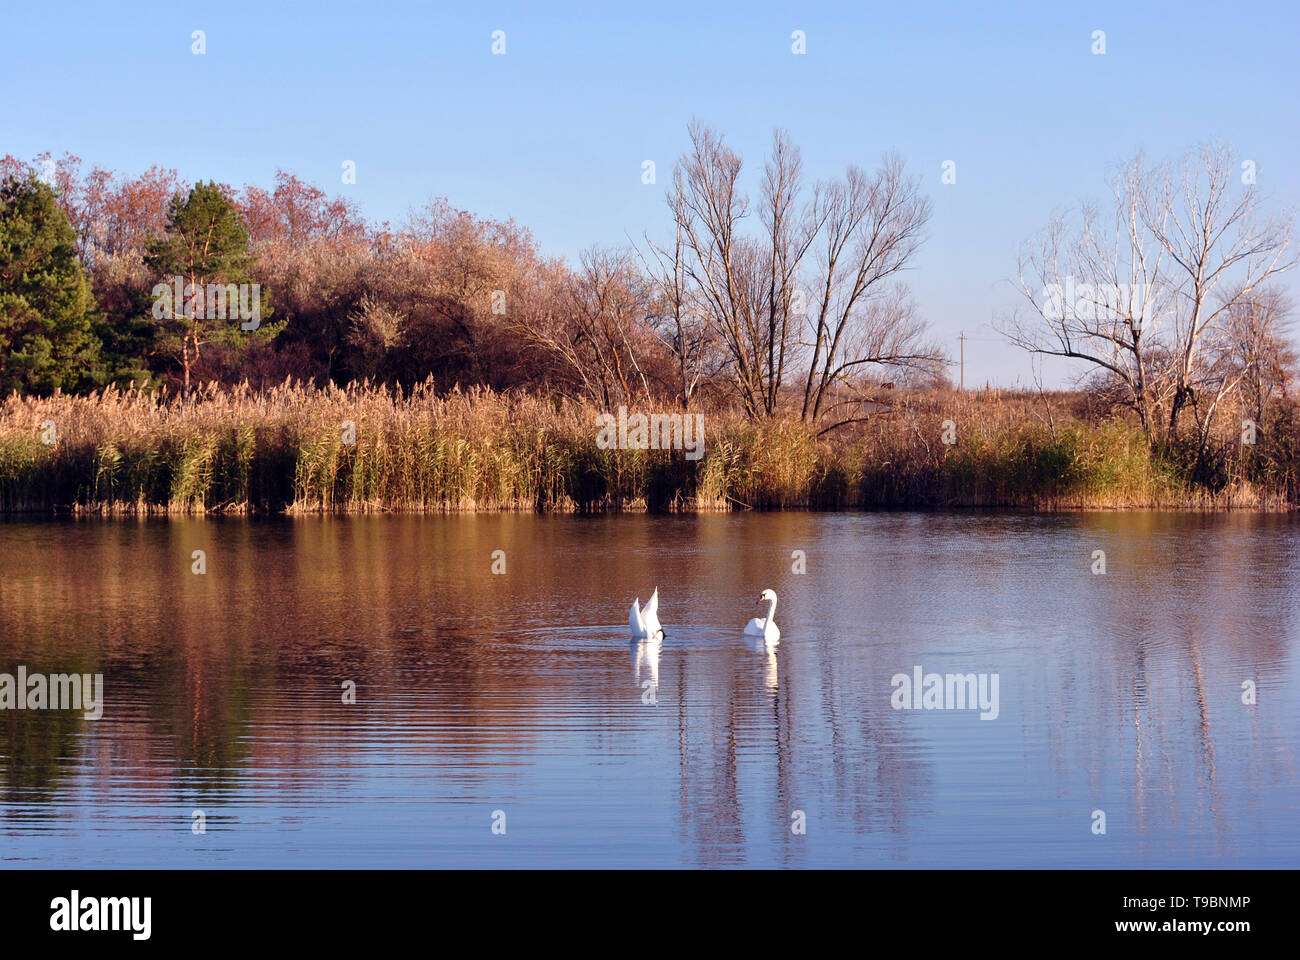 Forêt de pins et de saules sur la rive du lac avec deux cygnes blancs, sur un fond de ciel bleu, journée ensoleillée, l'Ukraine Banque D'Images